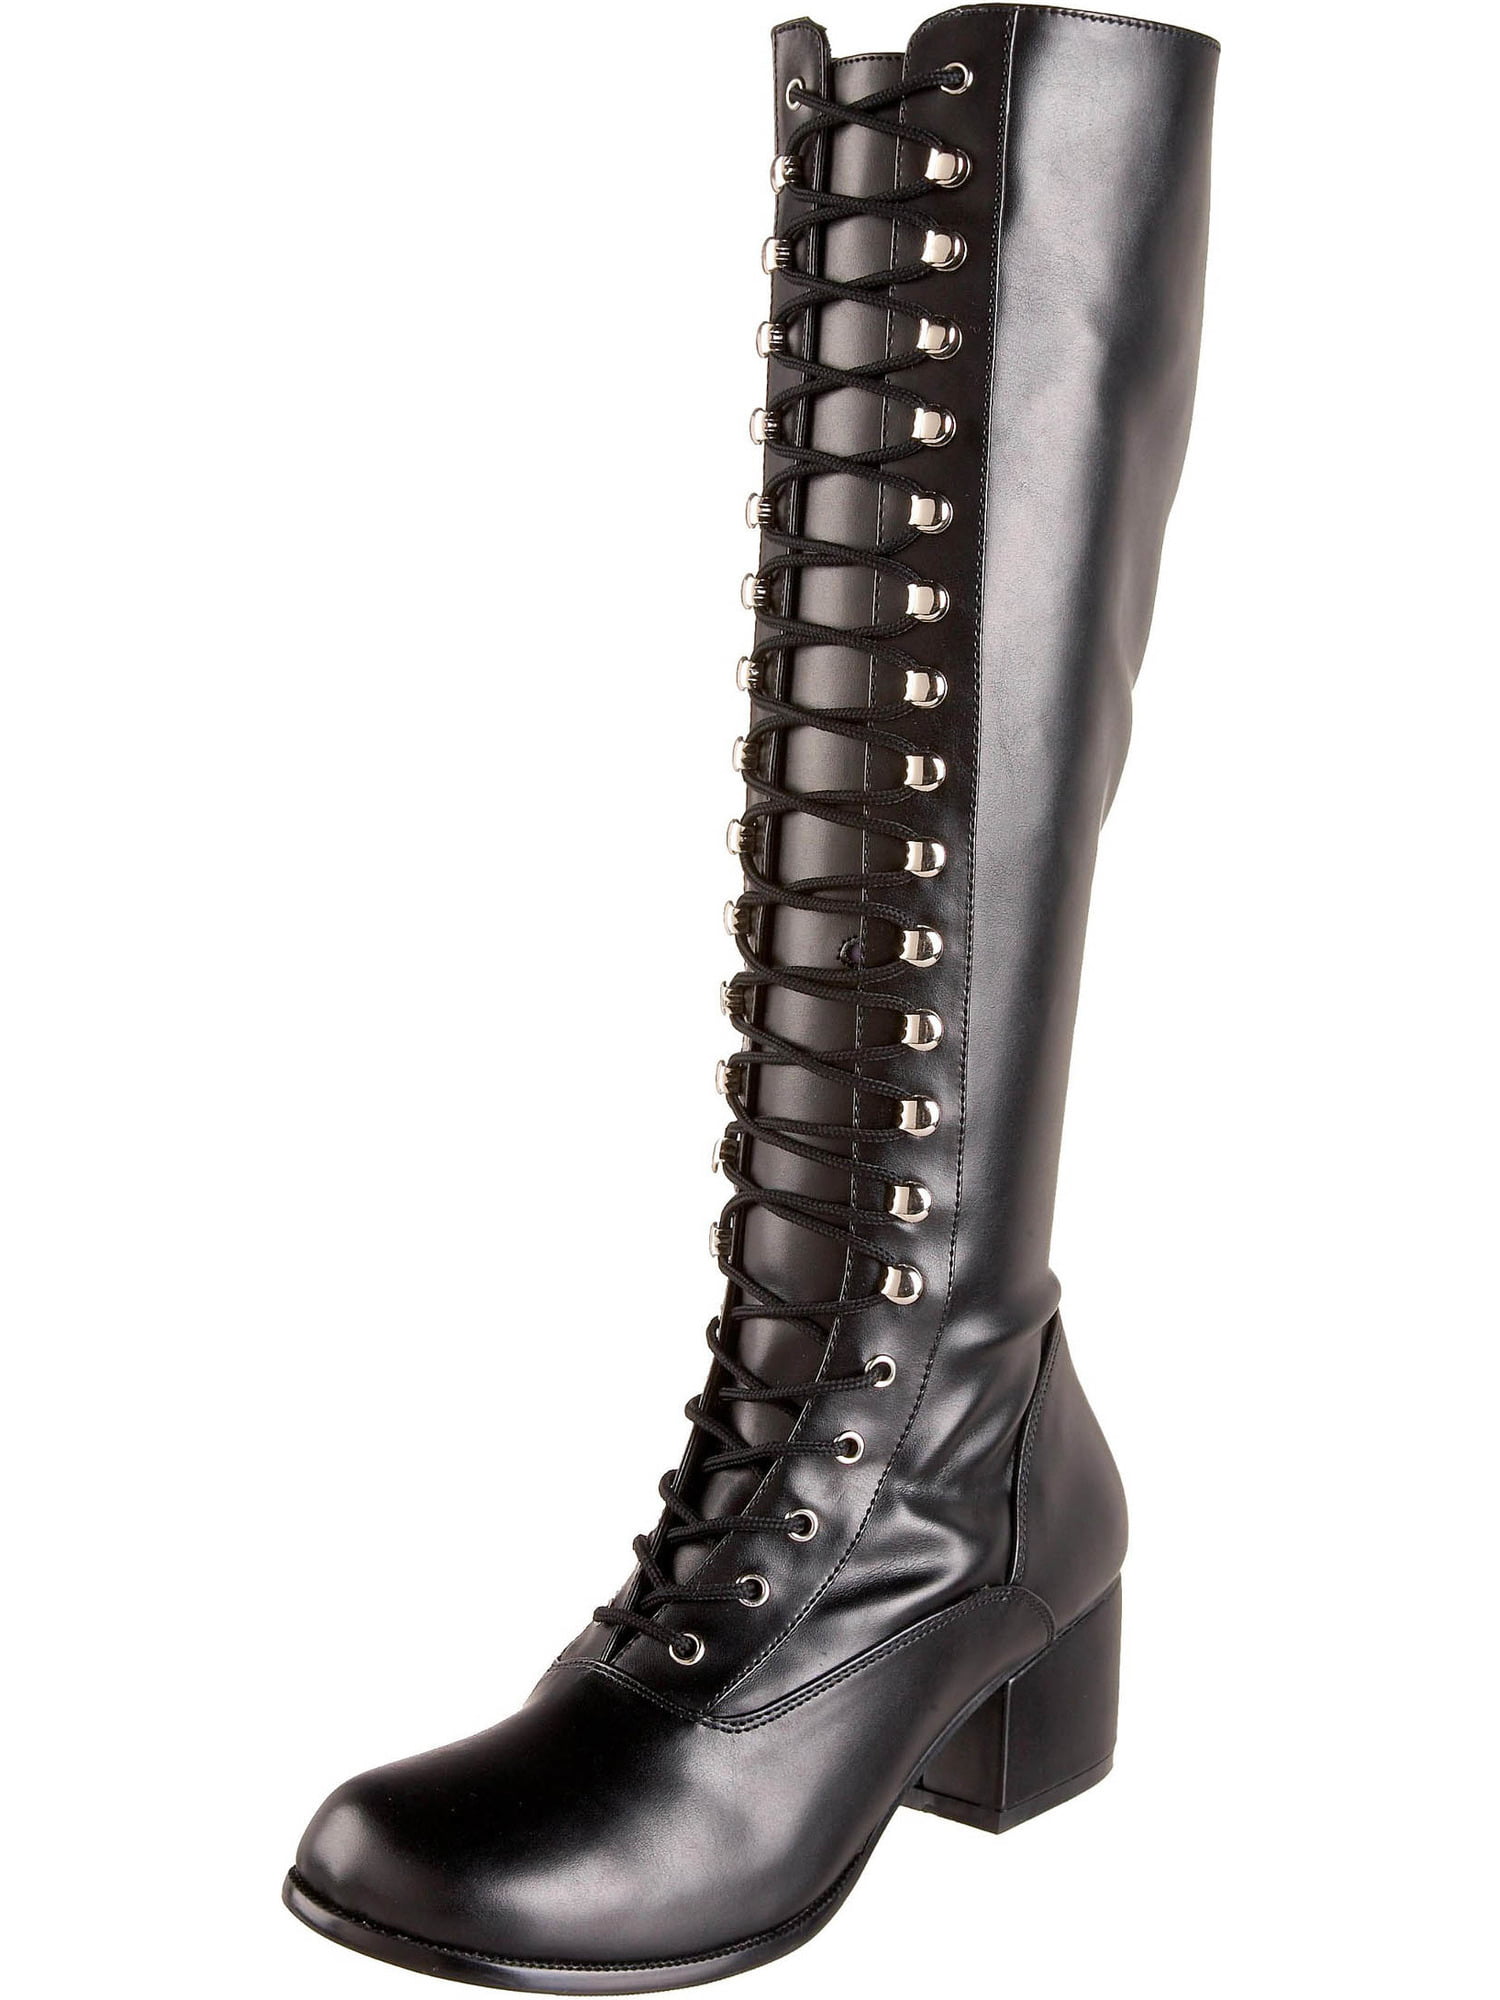 knee high black boots 2 inch heel